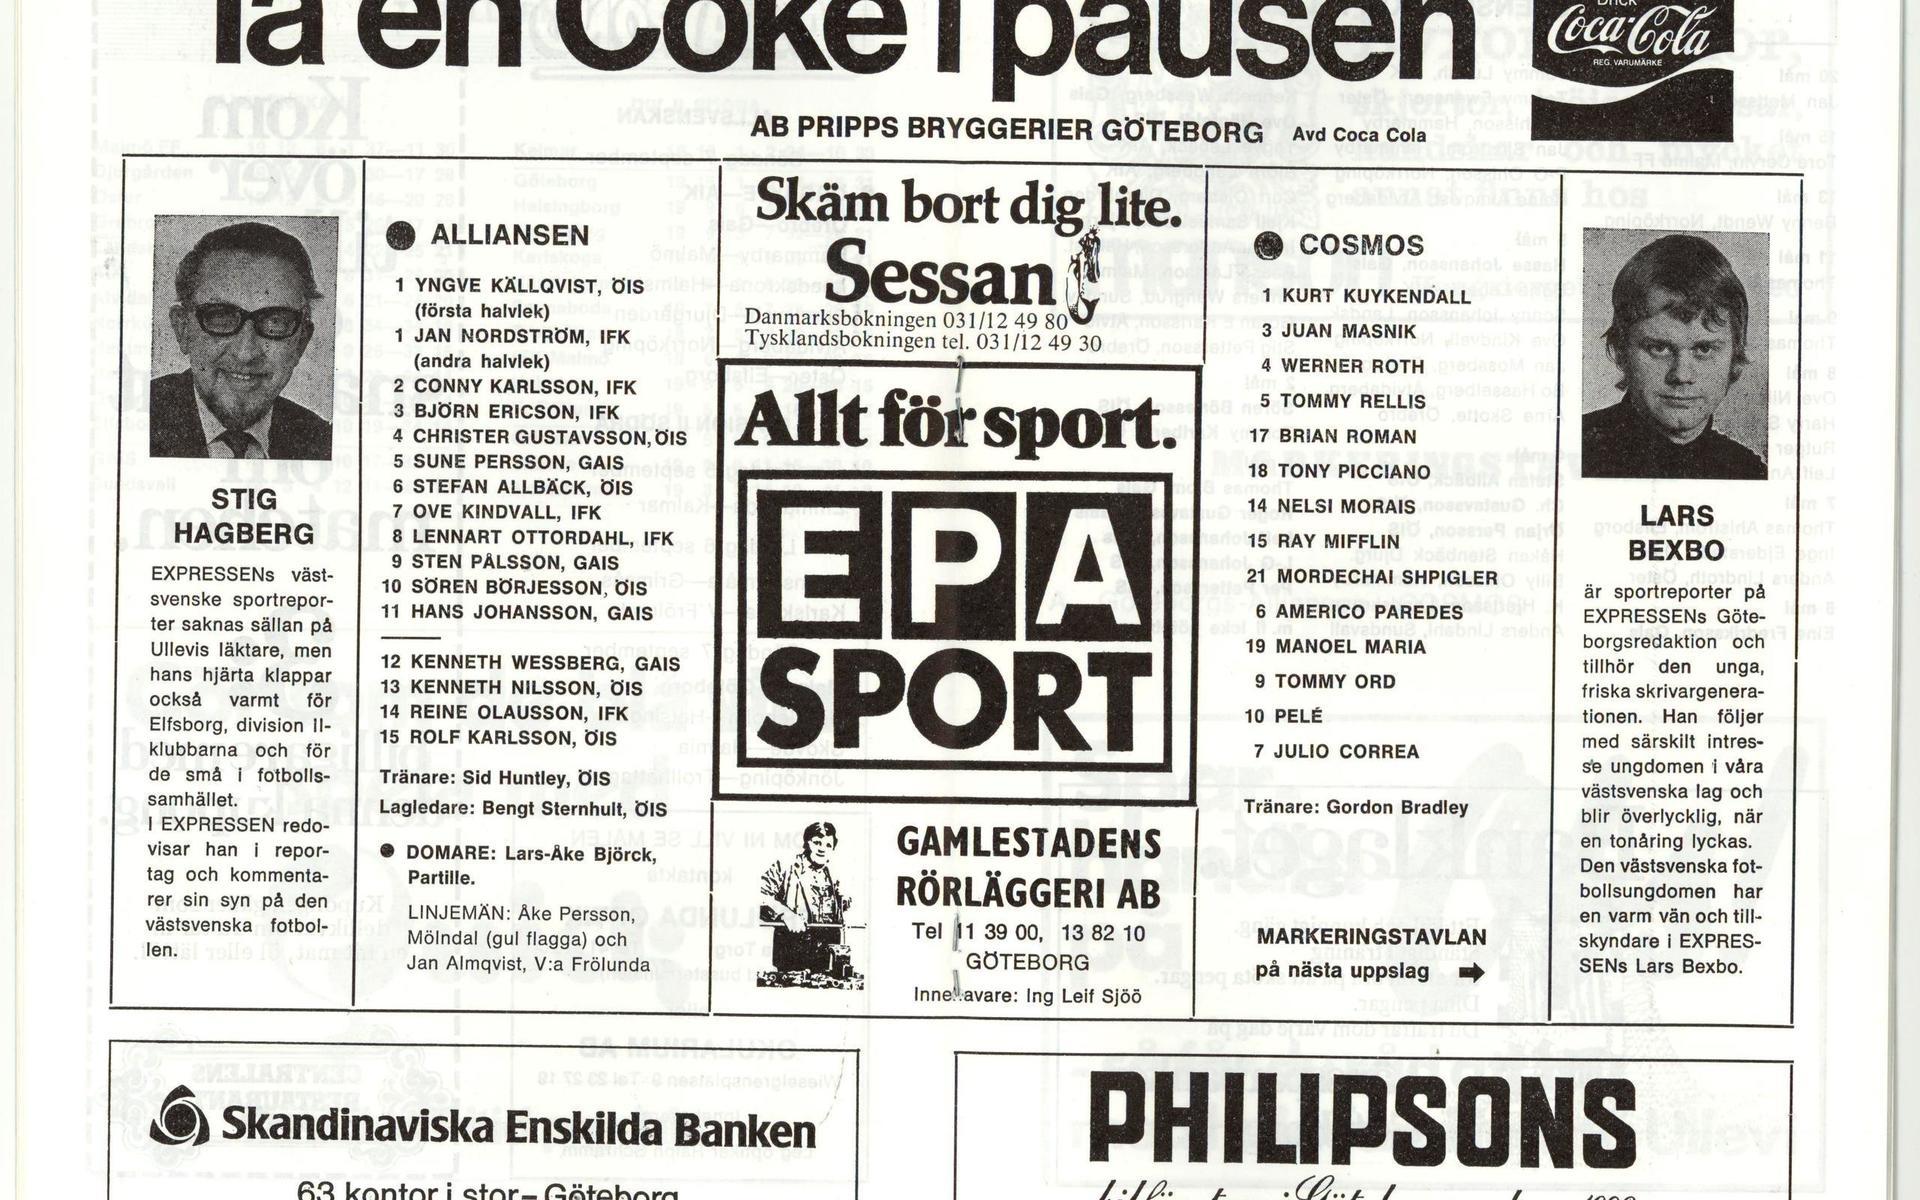 Programblad från Göteborgsalliansens match mot New York Cosmos med Pelé i laget den 2 september 1975.